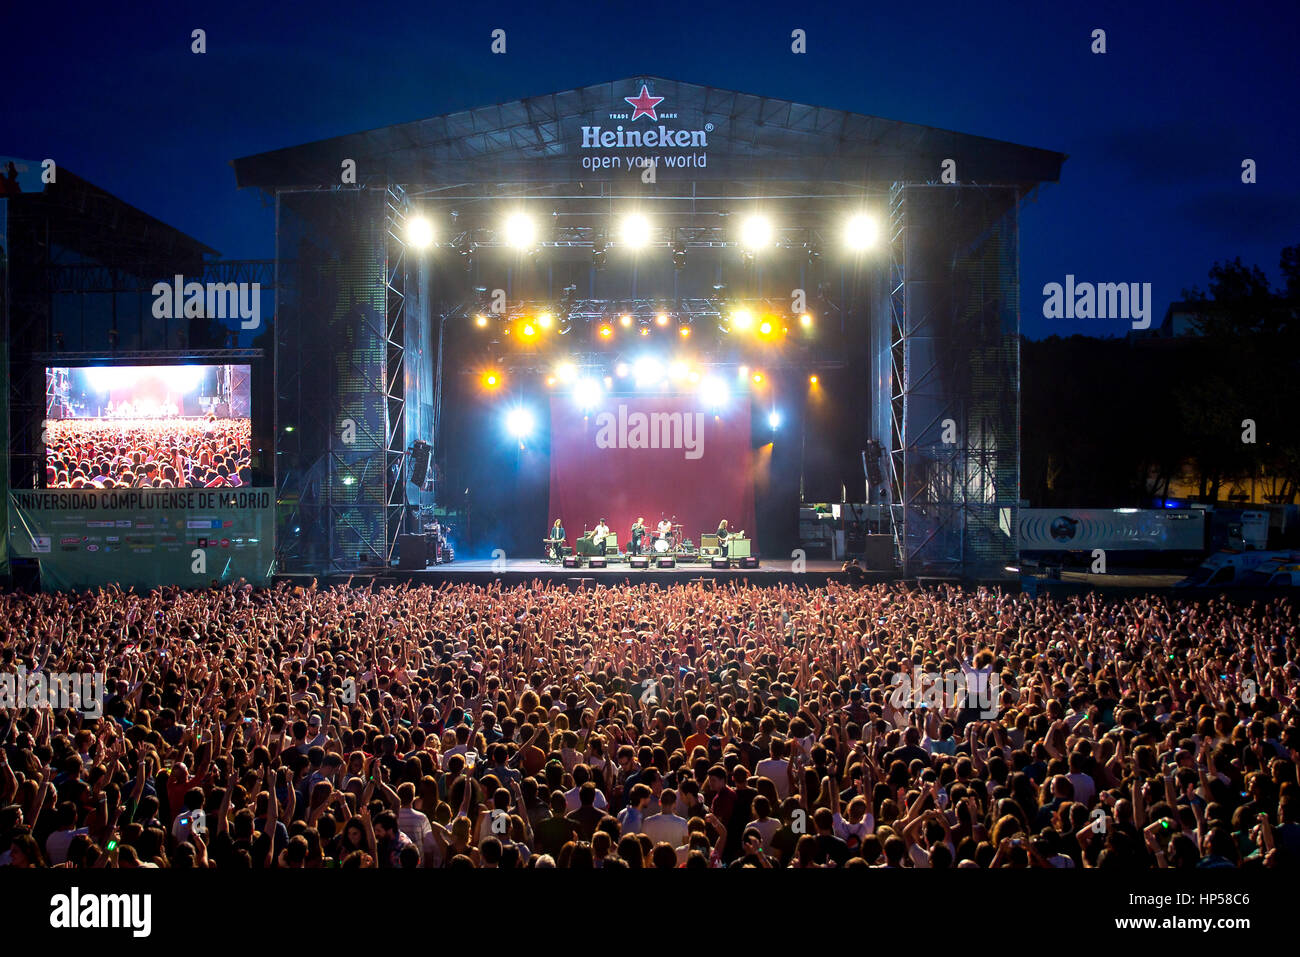 MADRID - Sep 12: la folla in un concerto a Dcode Festival il 12 settembre 2015 a Madrid, Spagna. Foto Stock